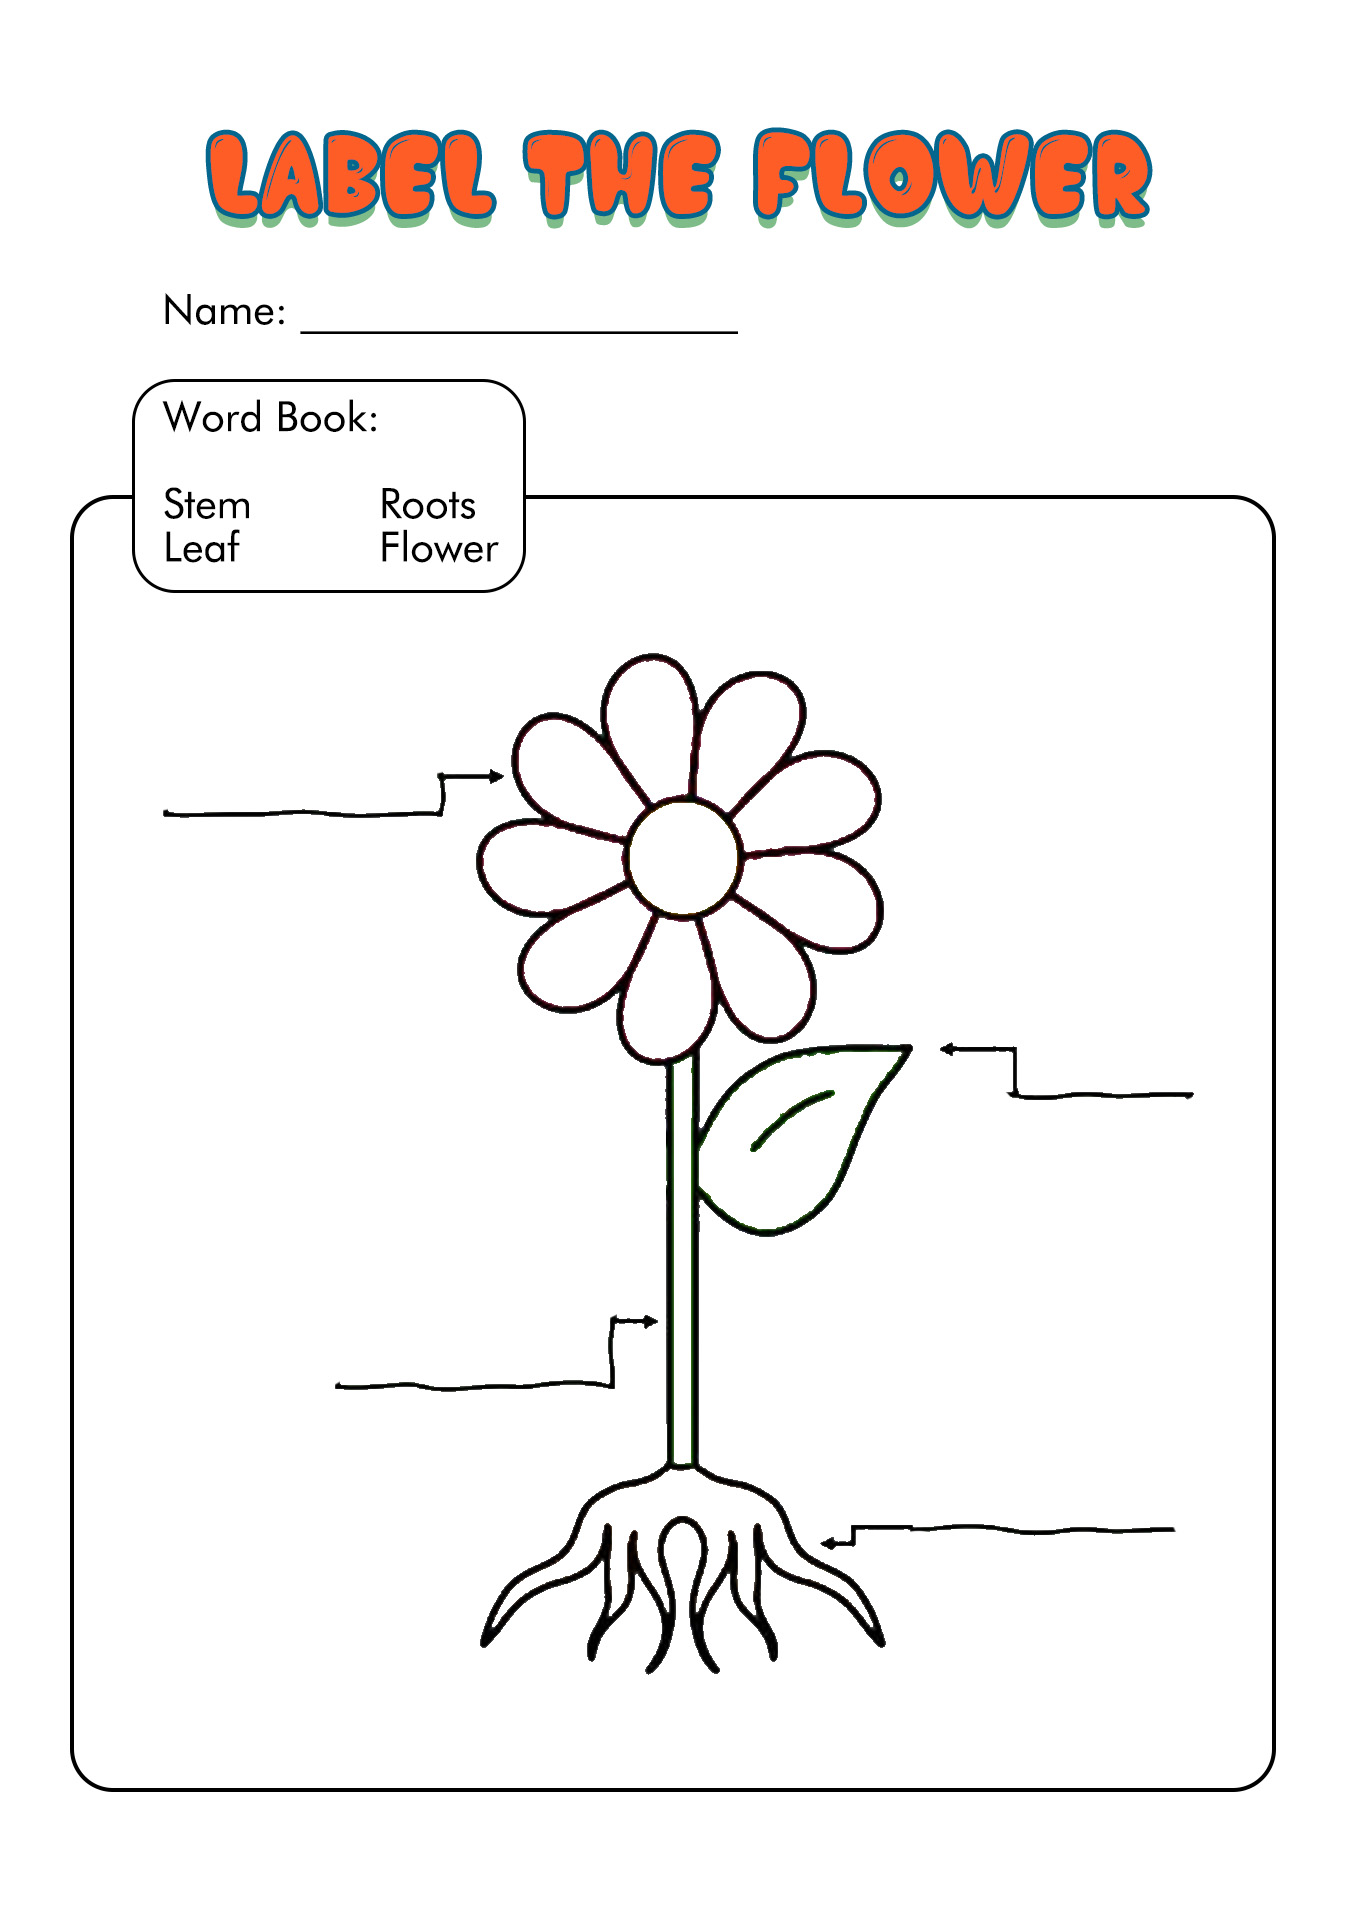 labeling-a-plant-worksheet